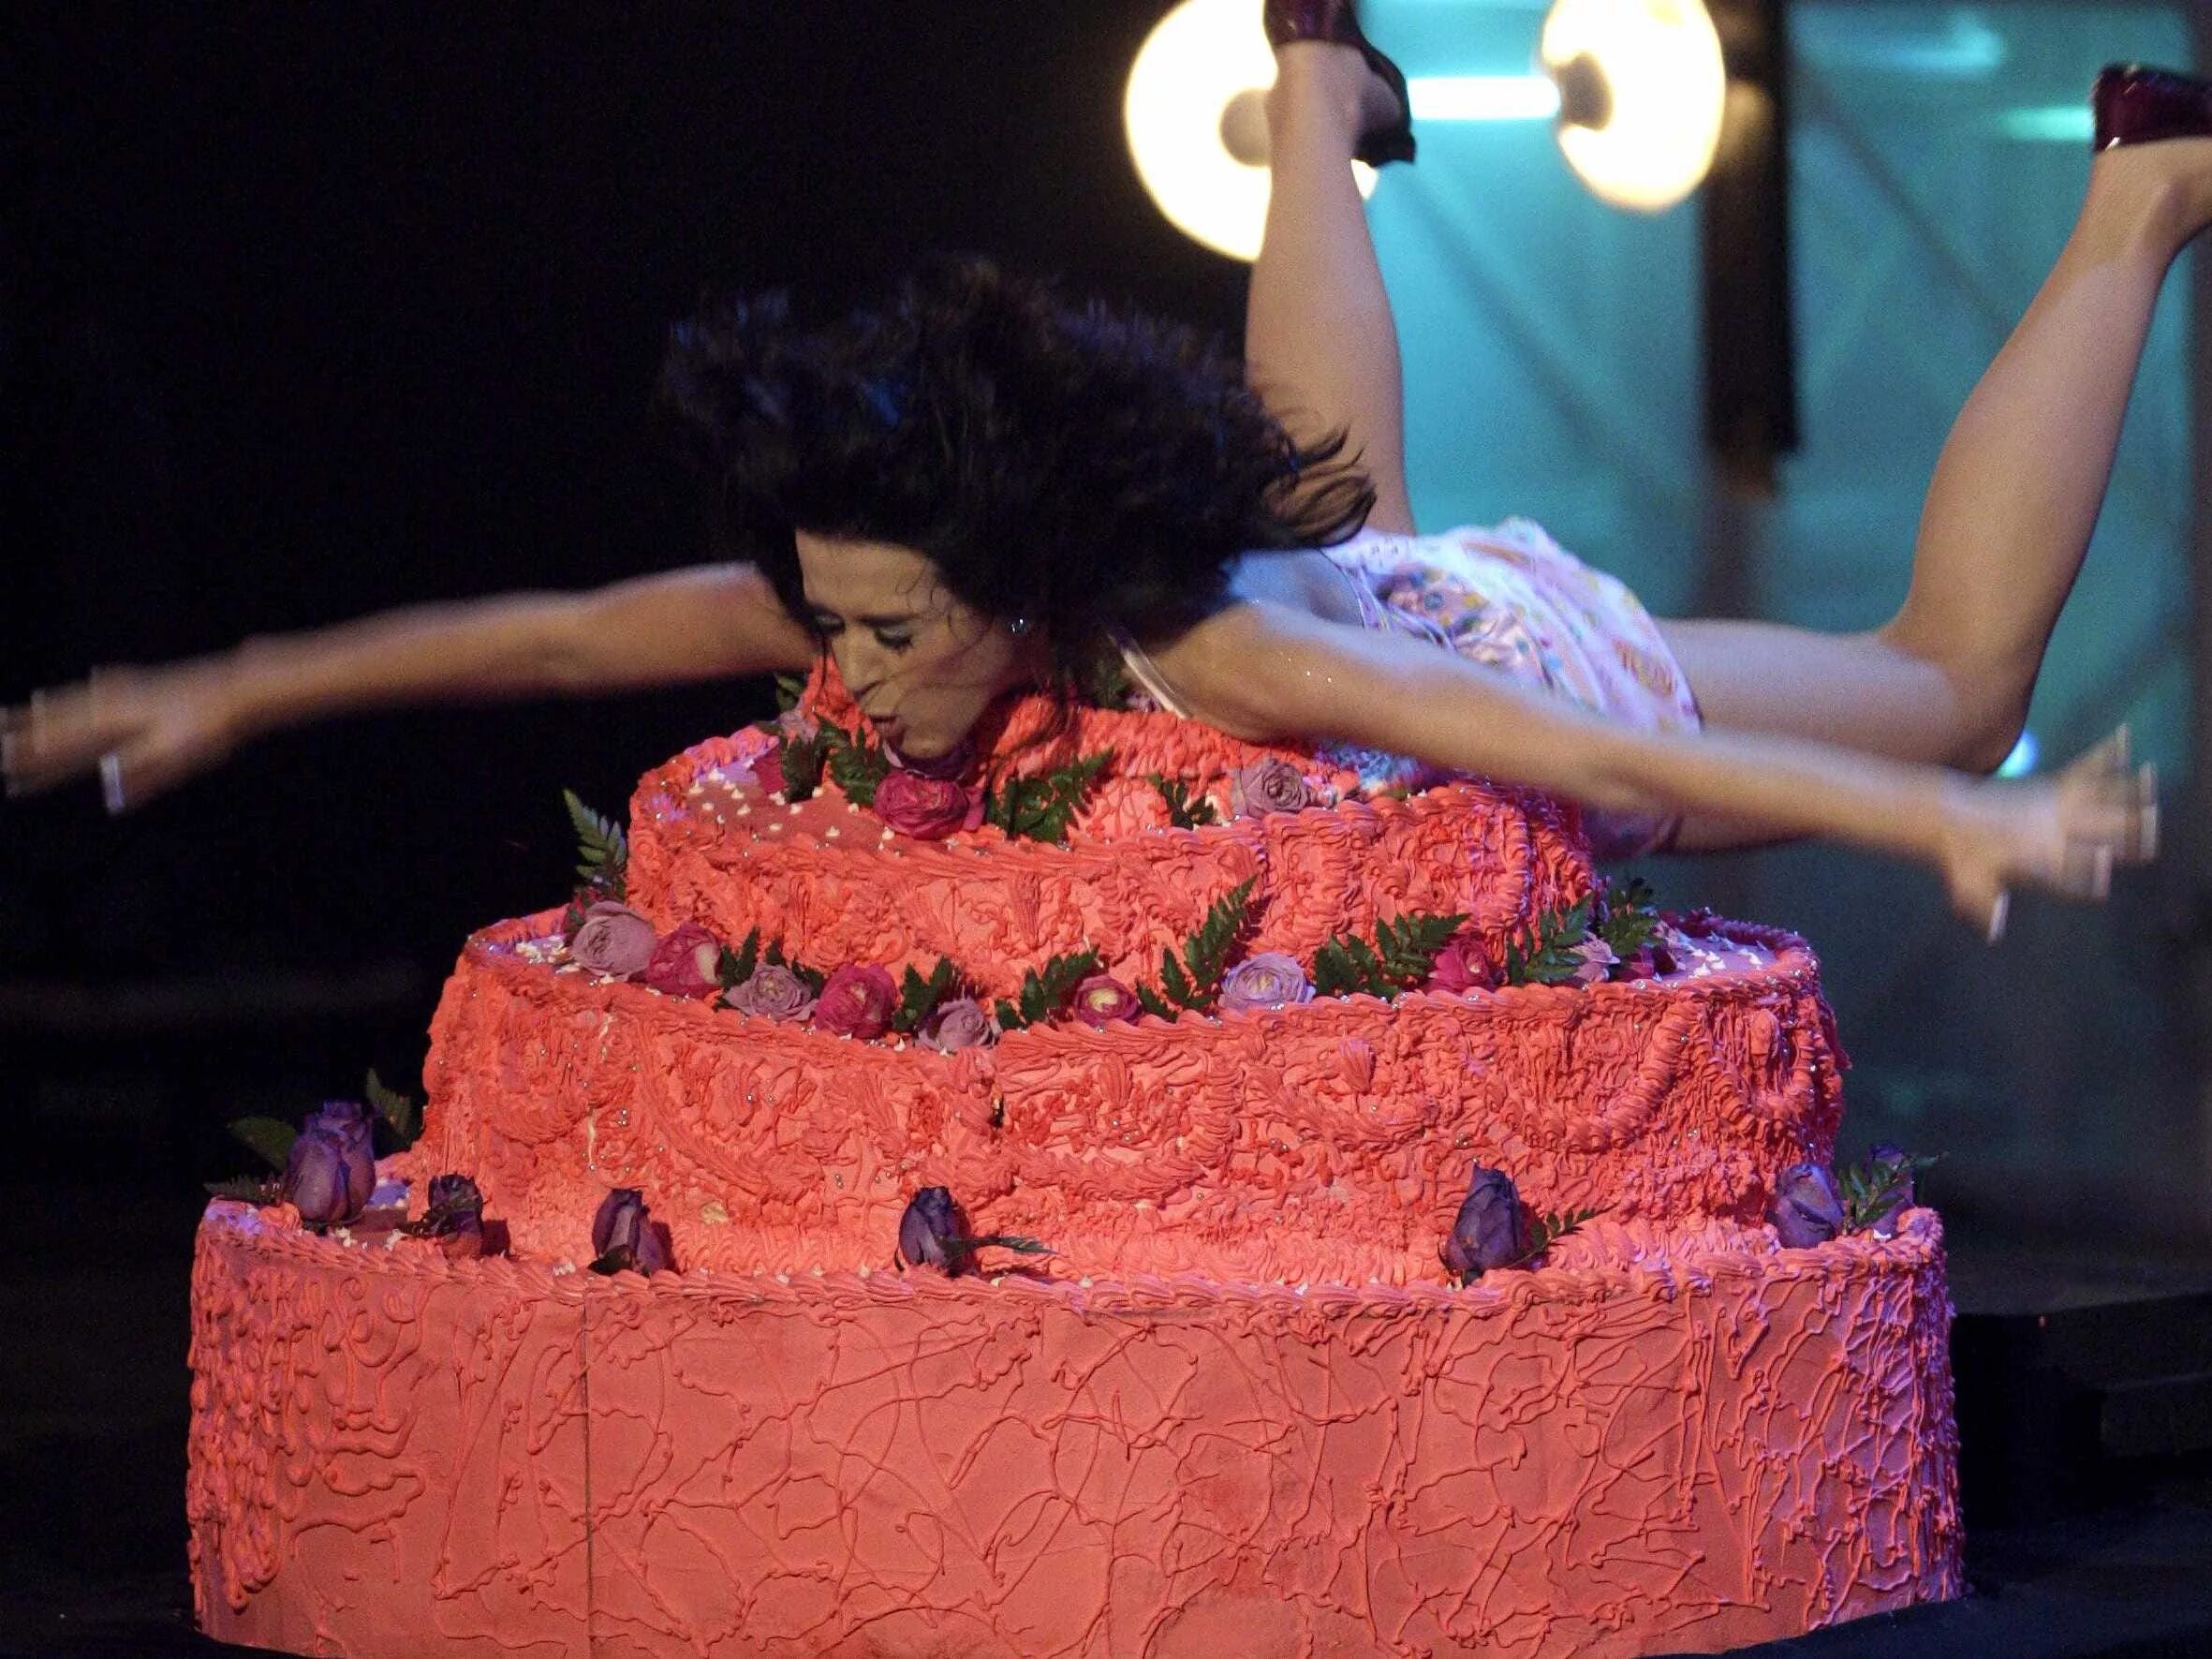 На днюхе девушку ткнули лицом в торт. Торт с Кэти Перри. Кэти Перри в тортиках. Торт для девушки. Девушка из торта.